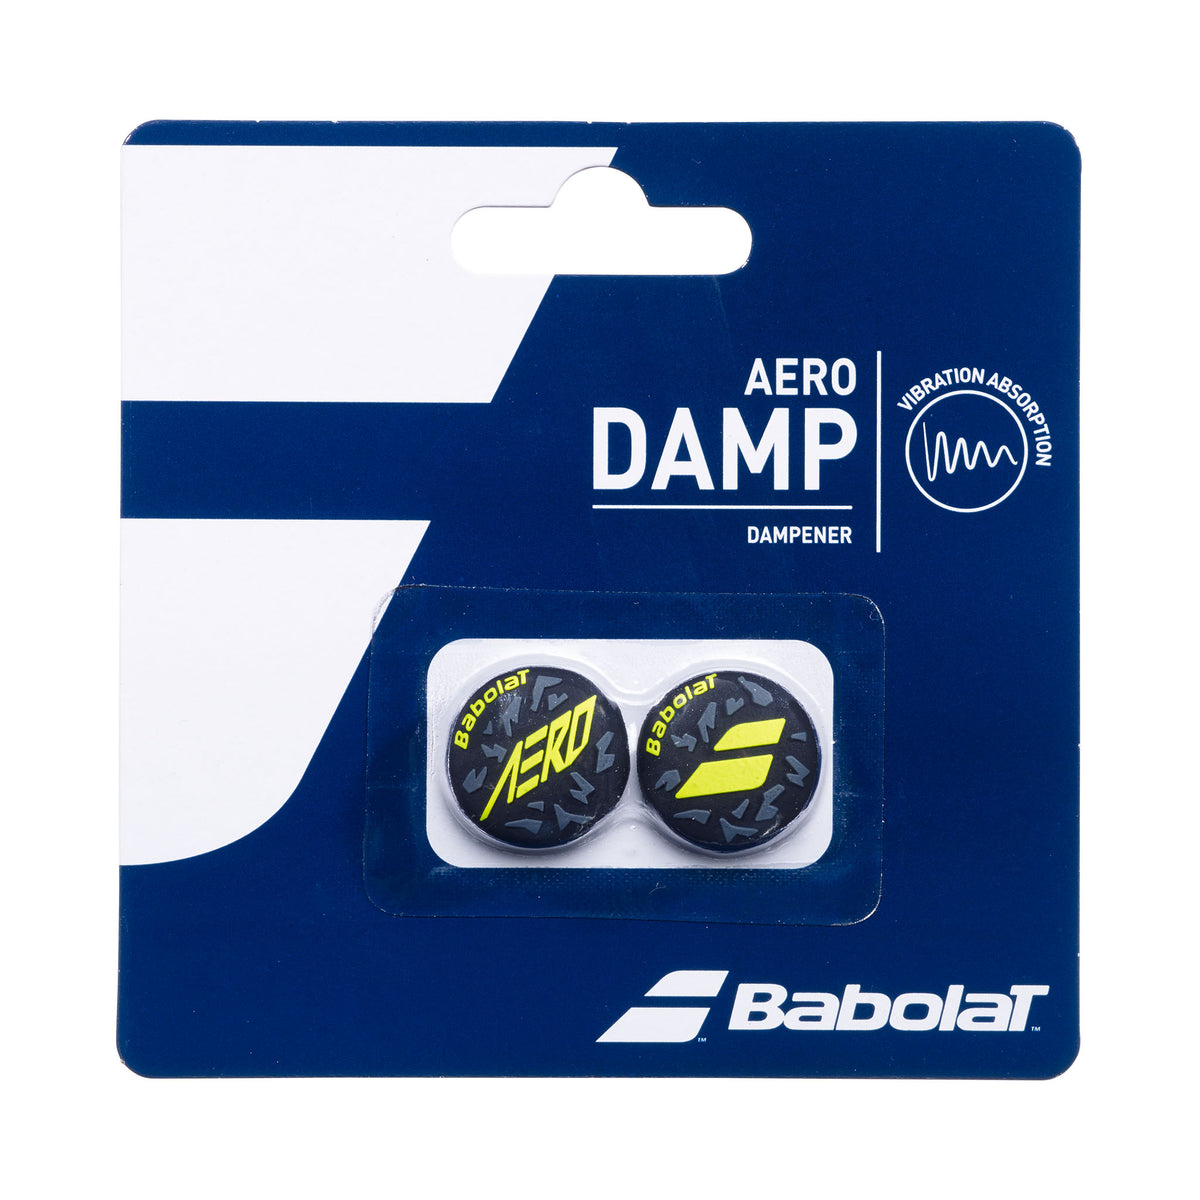 Babolat Aero Damp Dampener x2